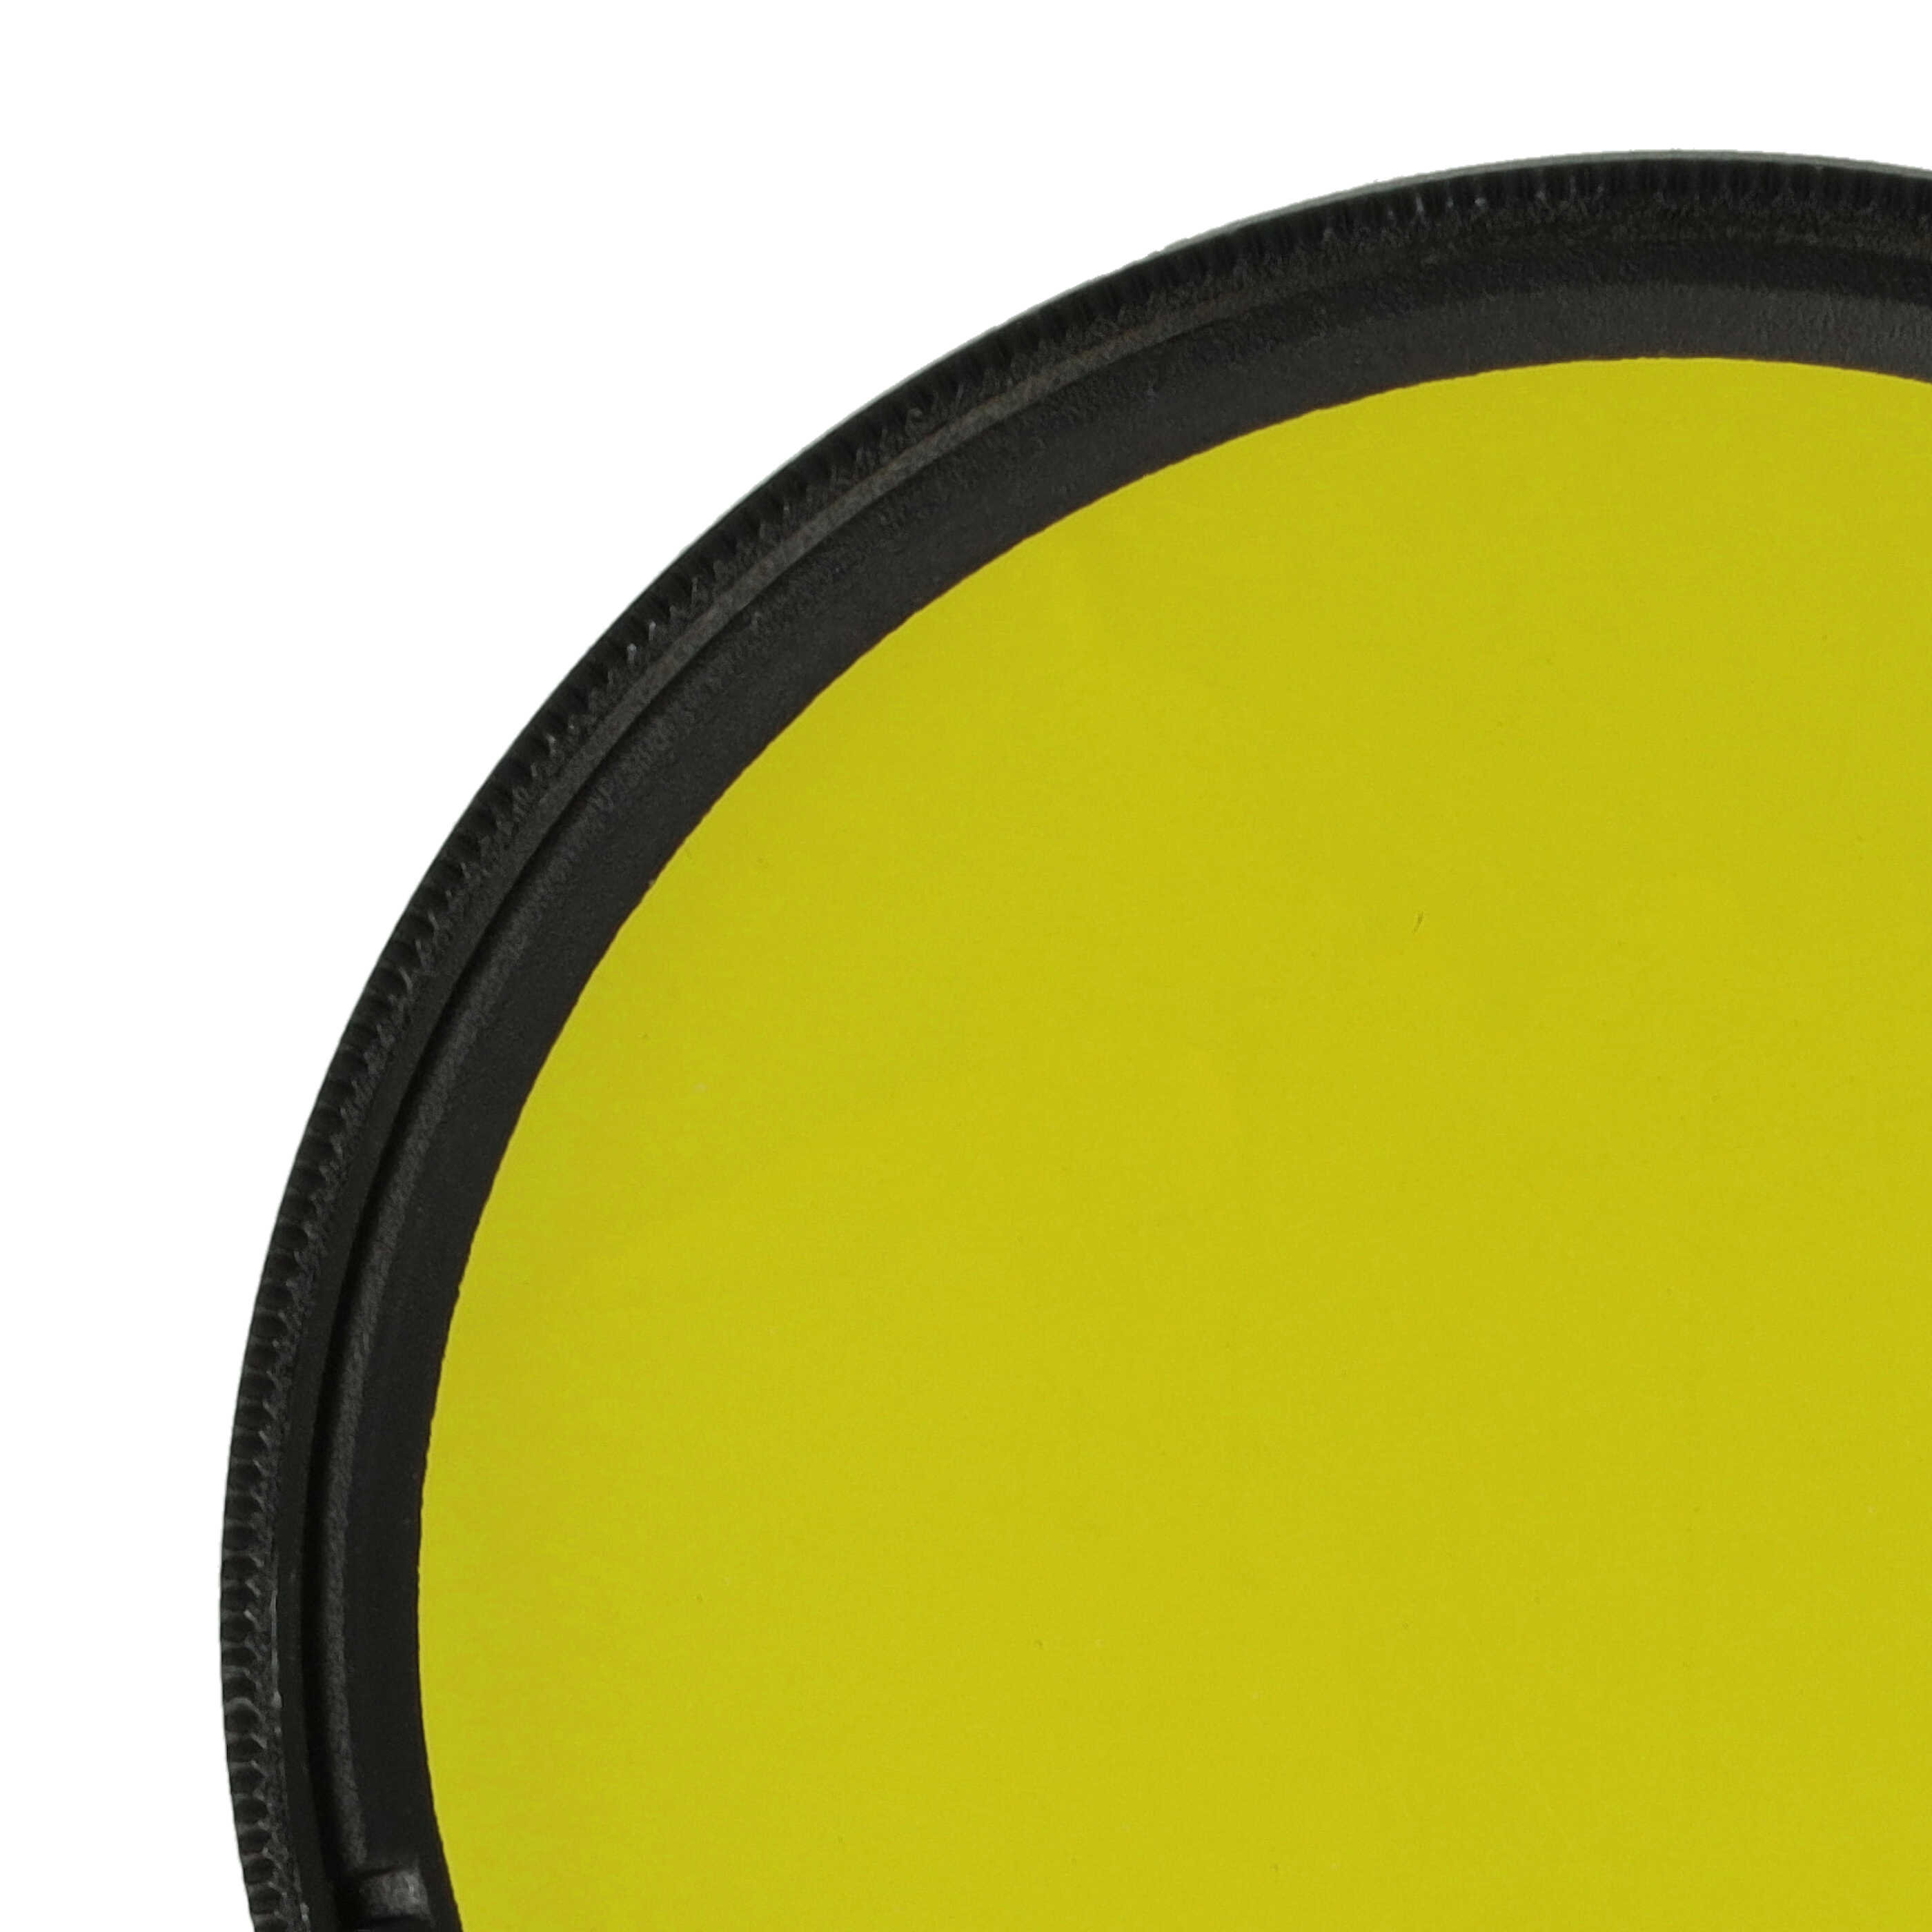 Filtro colorato per obiettivi fotocamera con filettatura da 55 mm - filtro giallo